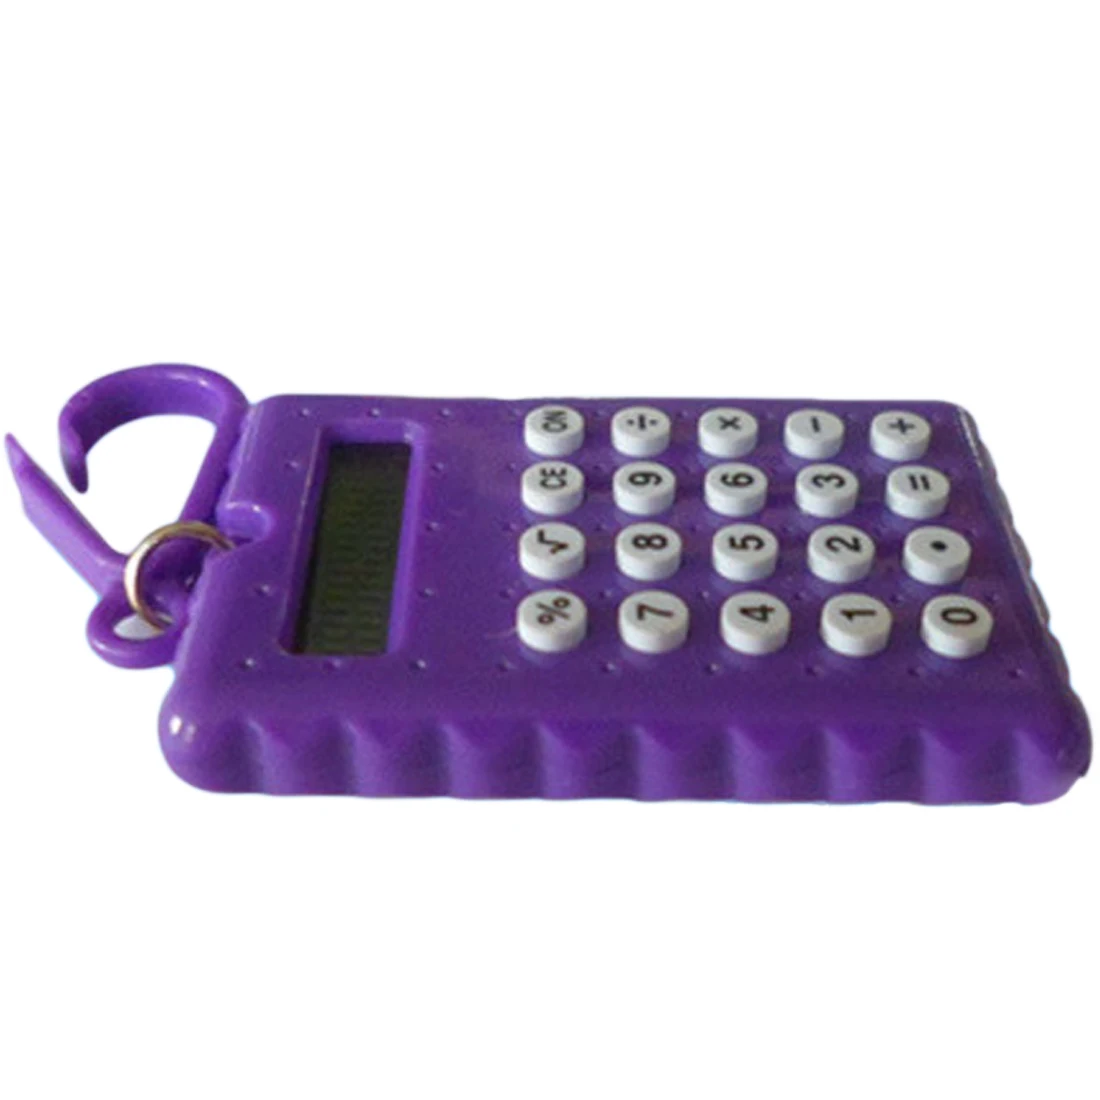 Студенческий мини электронный калькулятор карамельного цвета, расчетные офисные принадлежности, подарок, супер маленький La calculadora de bolsillo